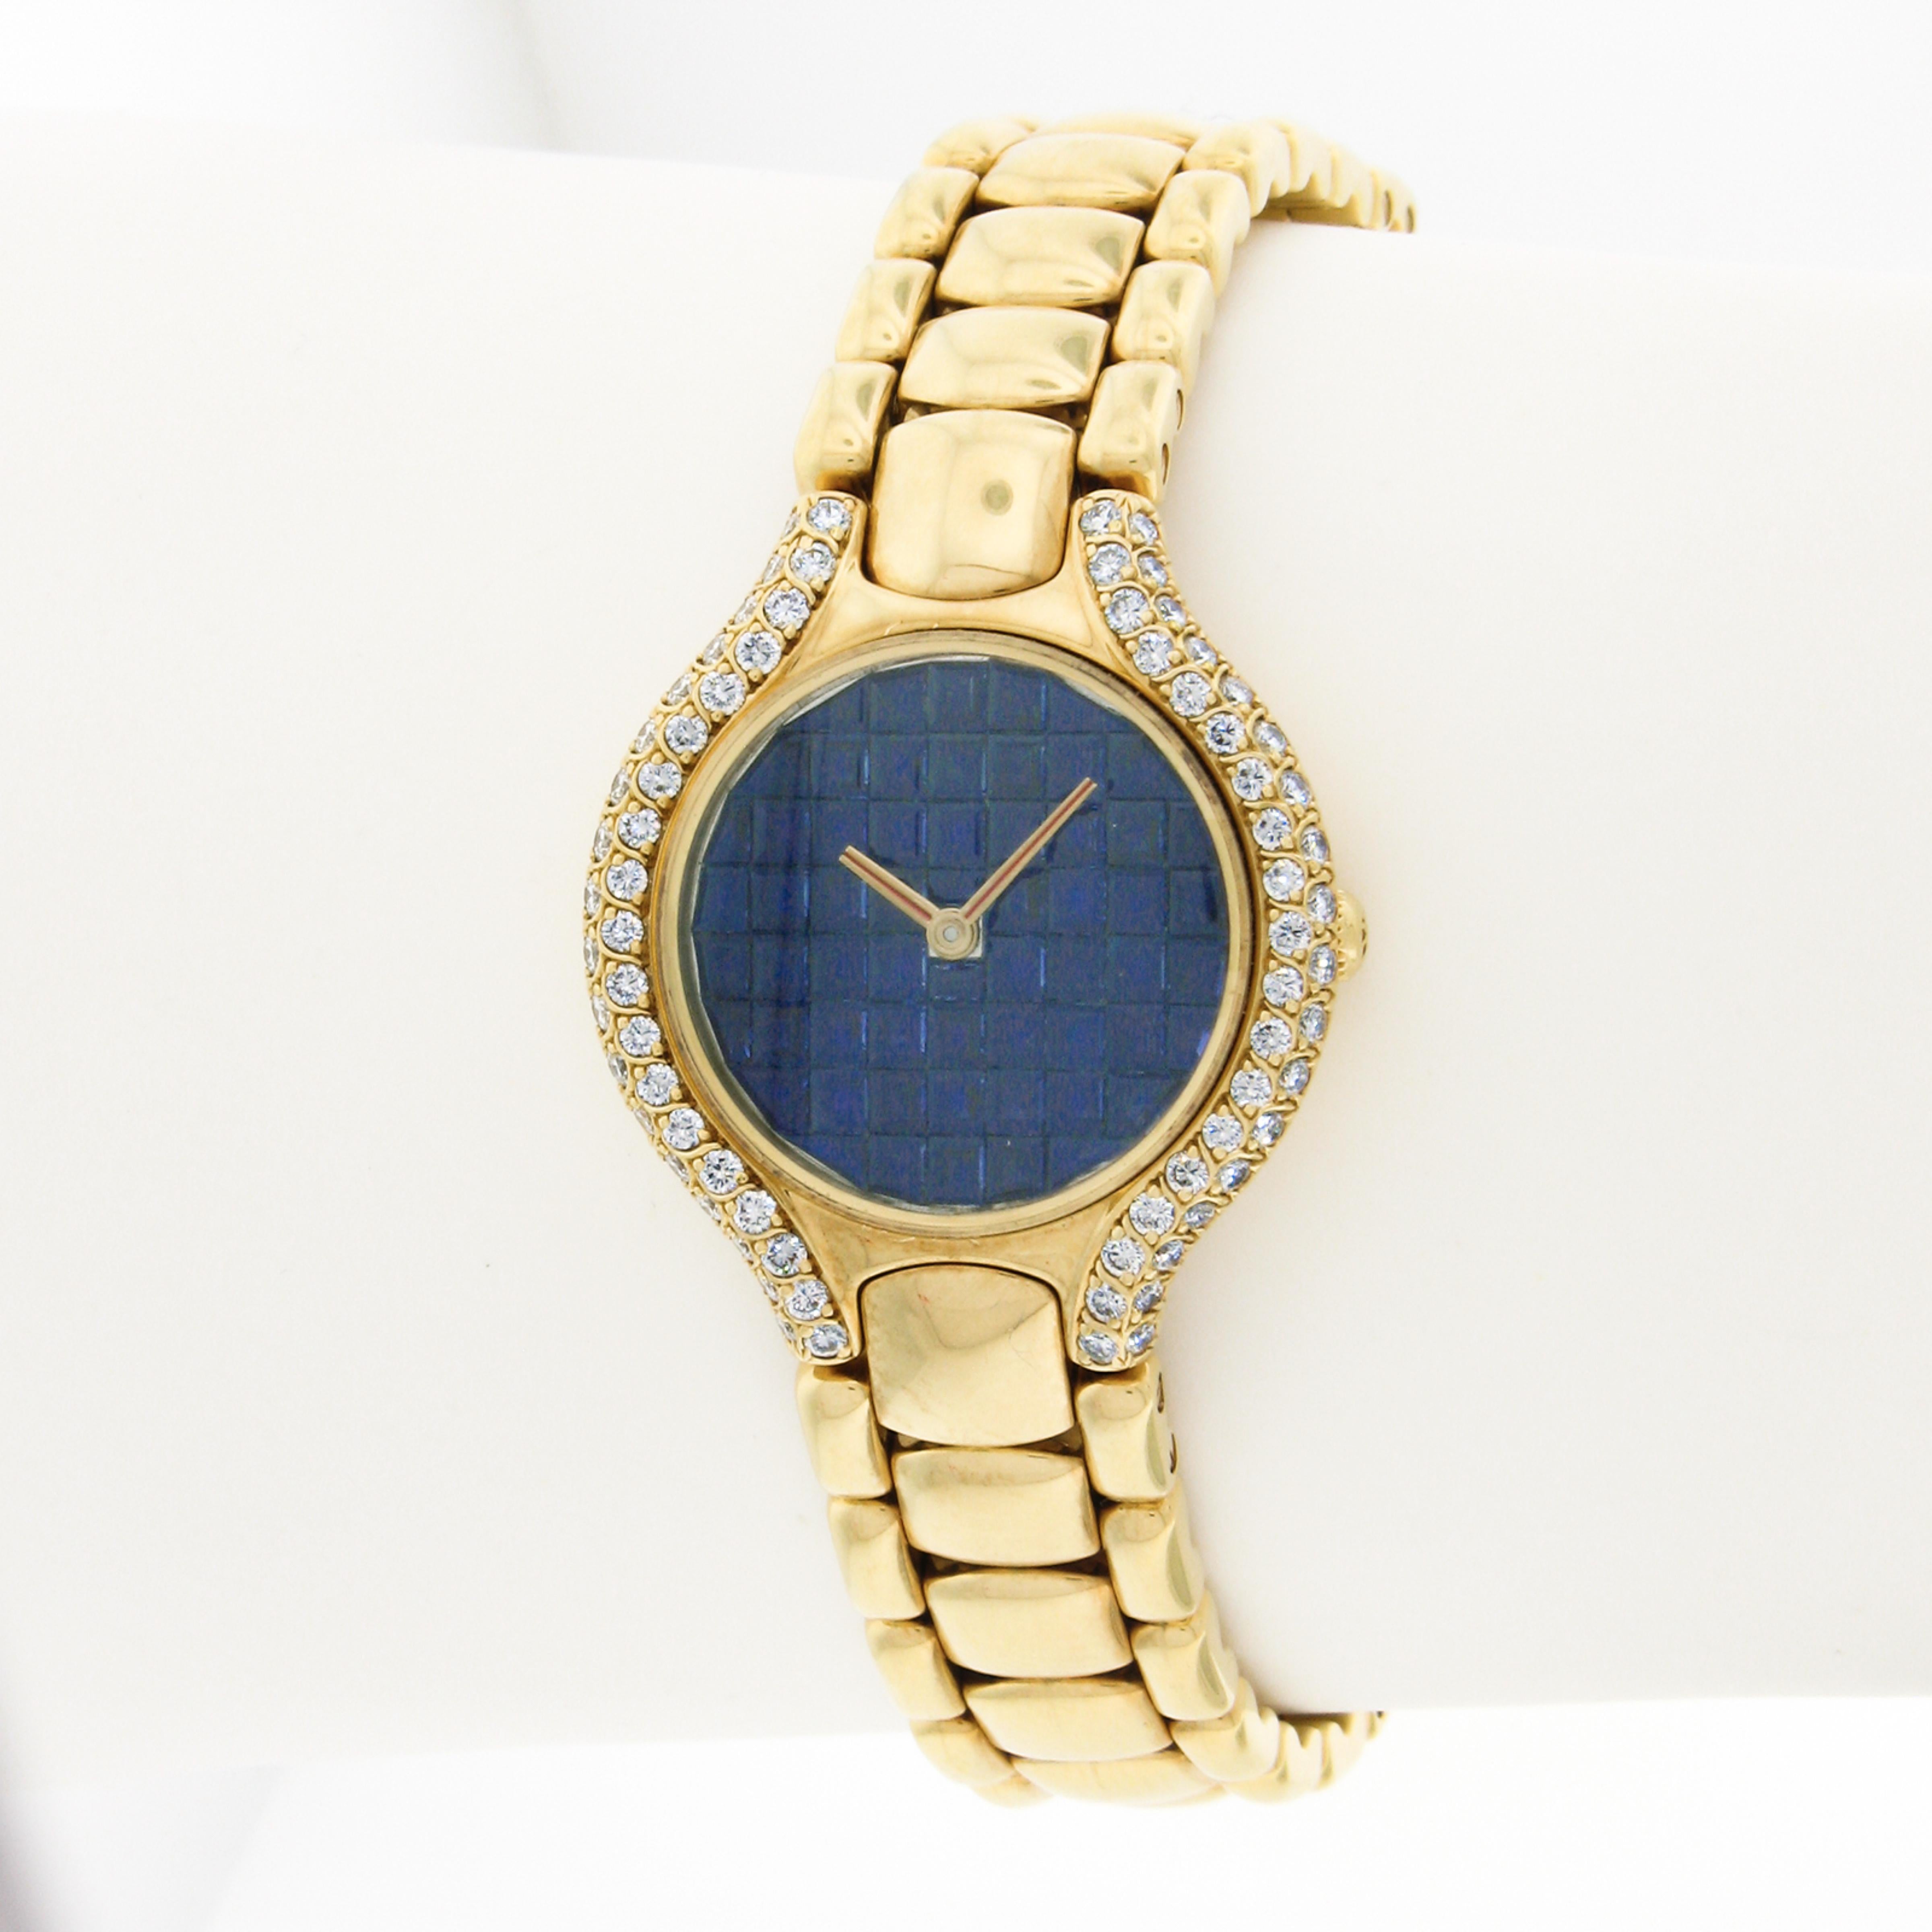 Cette montre-bracelet Ebel Beluga pour femme, rare et de très bonne facture, présente un boîtier rond de 24 mm en or jaune 18 carats incrusté de diamants de qualité exceptionnelle, d'un poids total d'environ 1,11 carat. Le cadran, unique et rare,